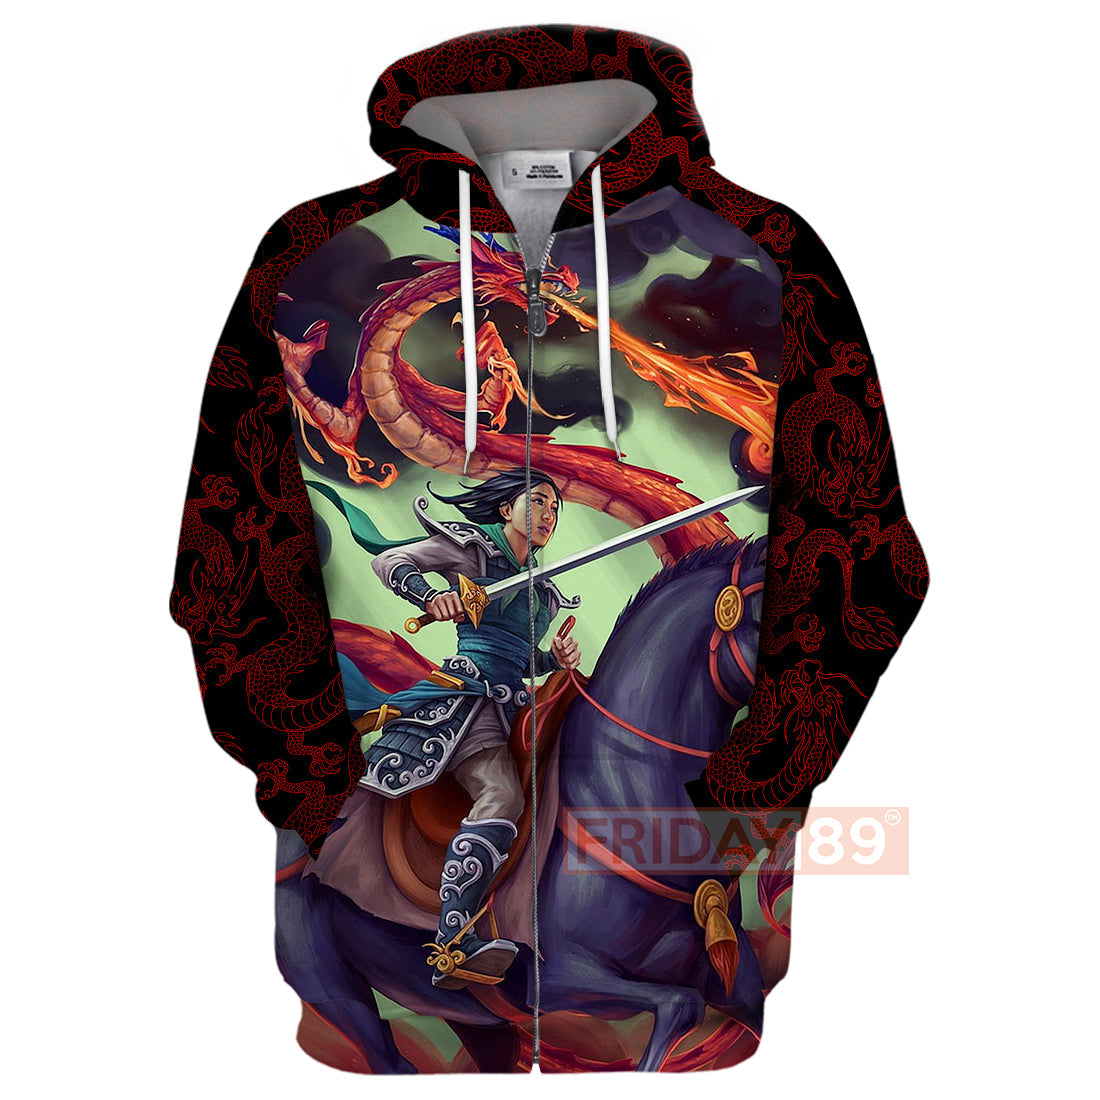 Unifinz DN T-shirt Princess Mulan Warrior Art 3D Print T-shirt Awesome DN Mulan Hoodie Sweater Tank 2026